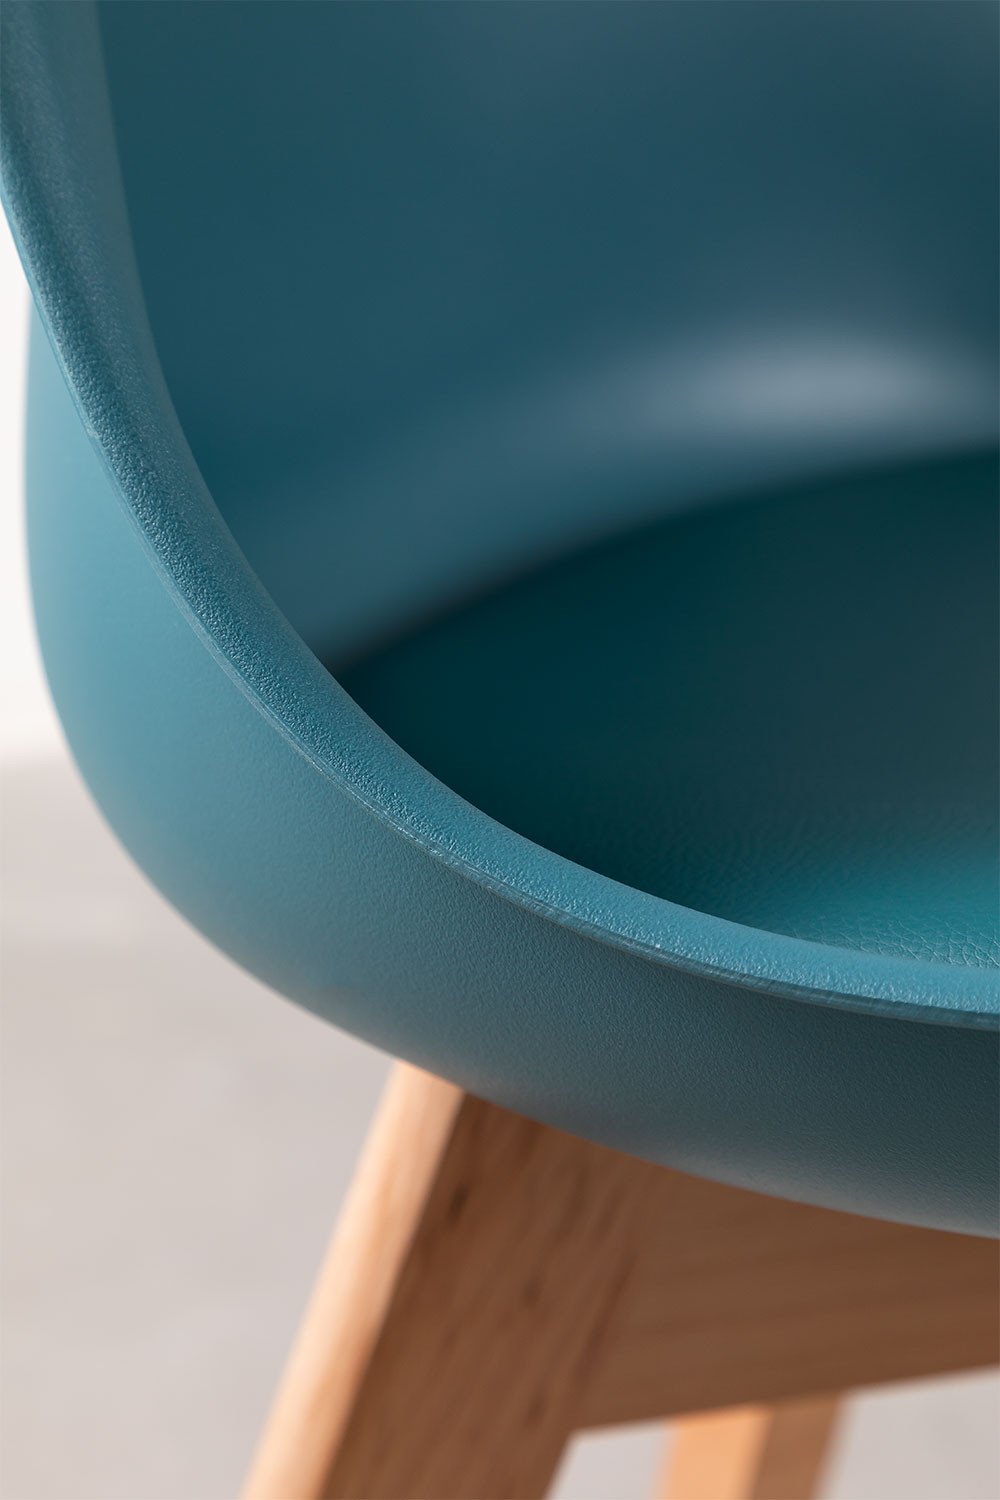 Pack de 4 sillas de comedor Nordic Azul Turquesa Intenso -  SKLUM